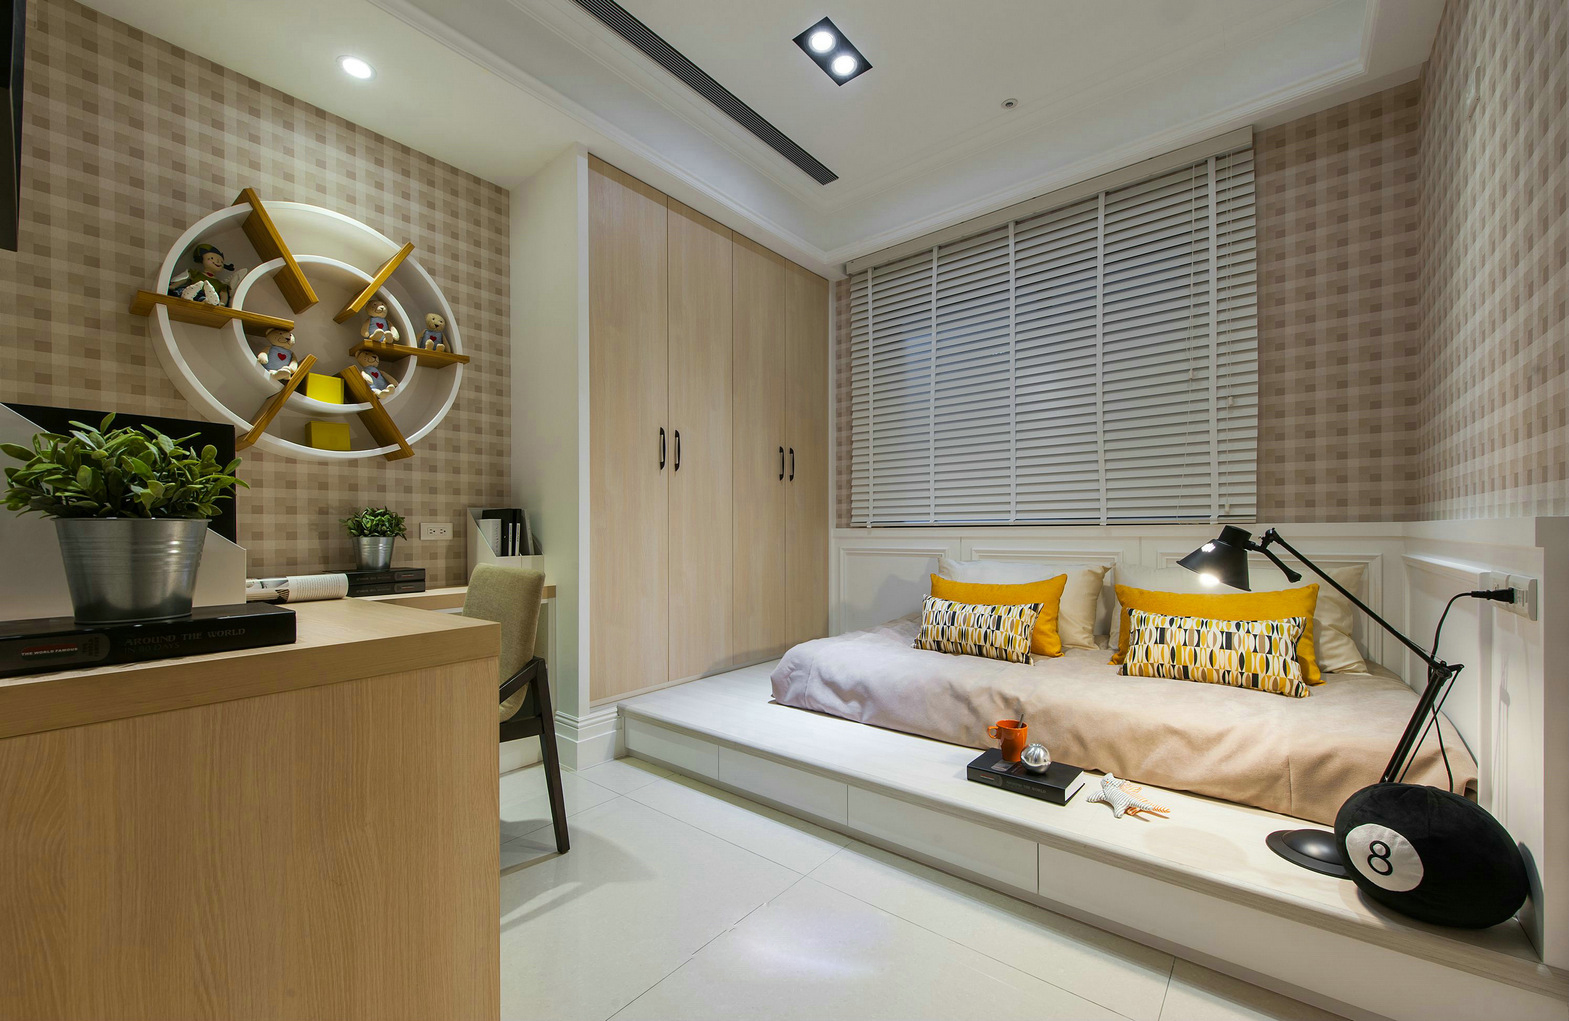 简约 欧式 旧房改造 收纳 卧室图片来自北京今朝装饰在简欧风的分享